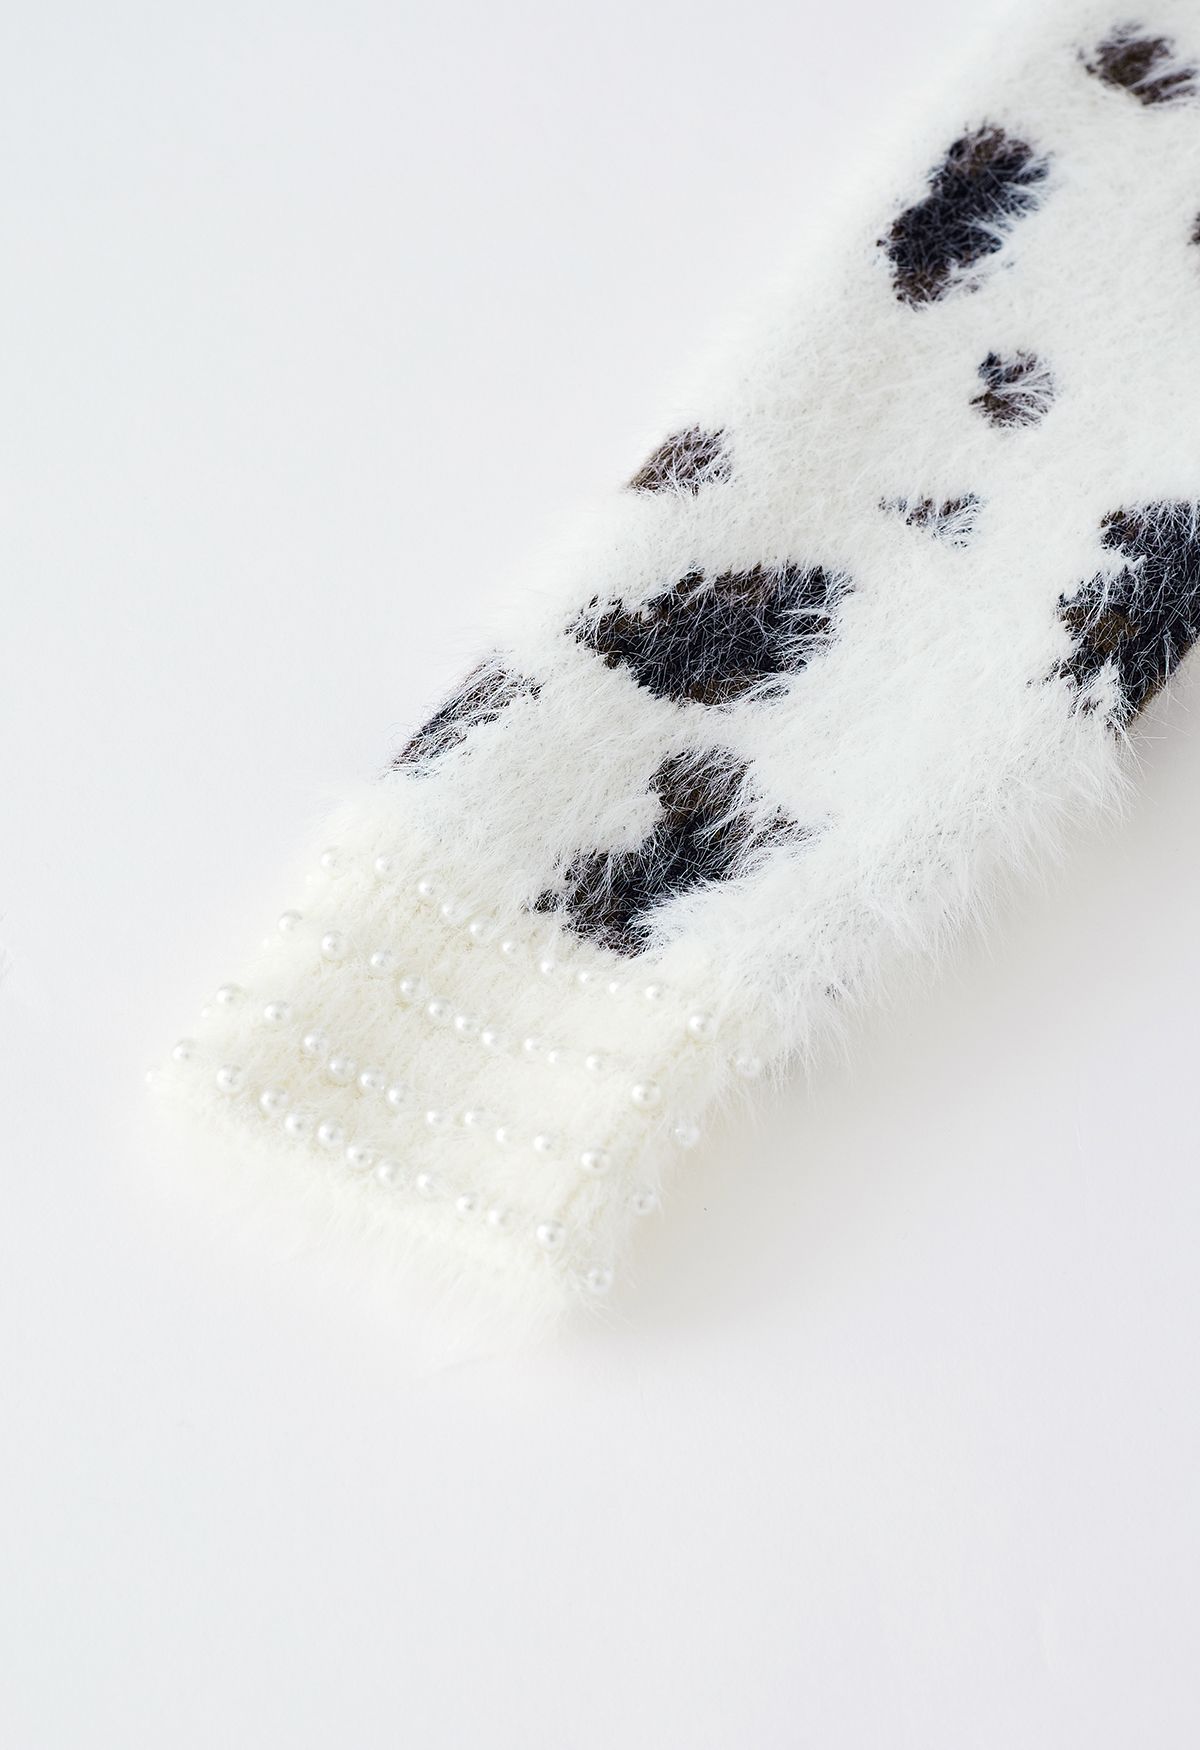 Pull court en tricot flou léopard nacré en blanc